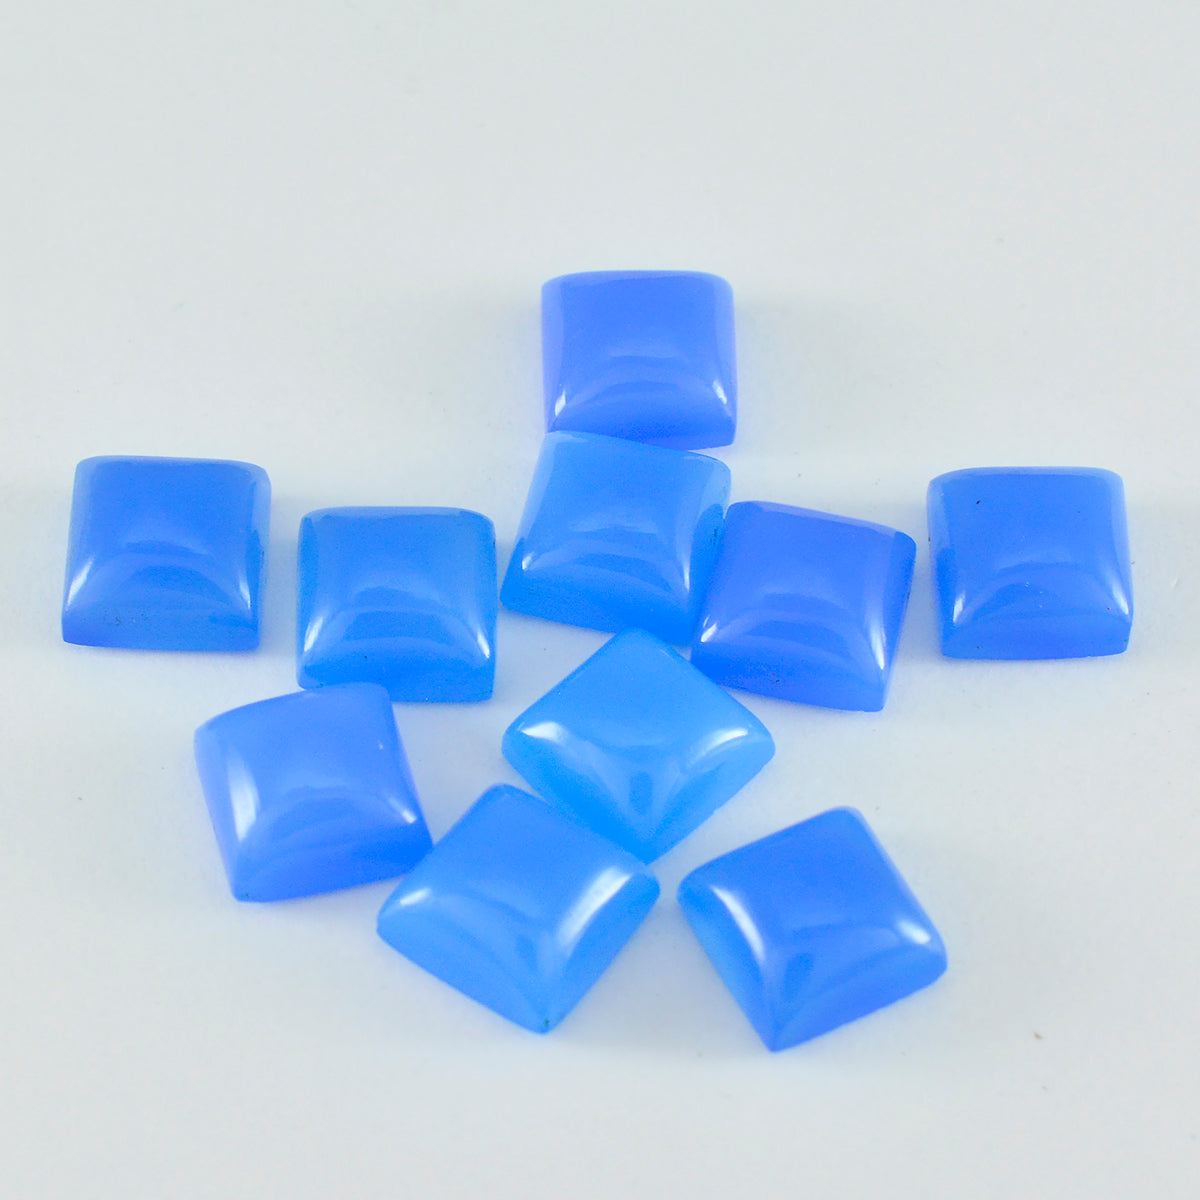 Riyogems 1 pc cabochon calcédoine bleue 7x7 mm forme carrée pierres précieuses d'excellente qualité